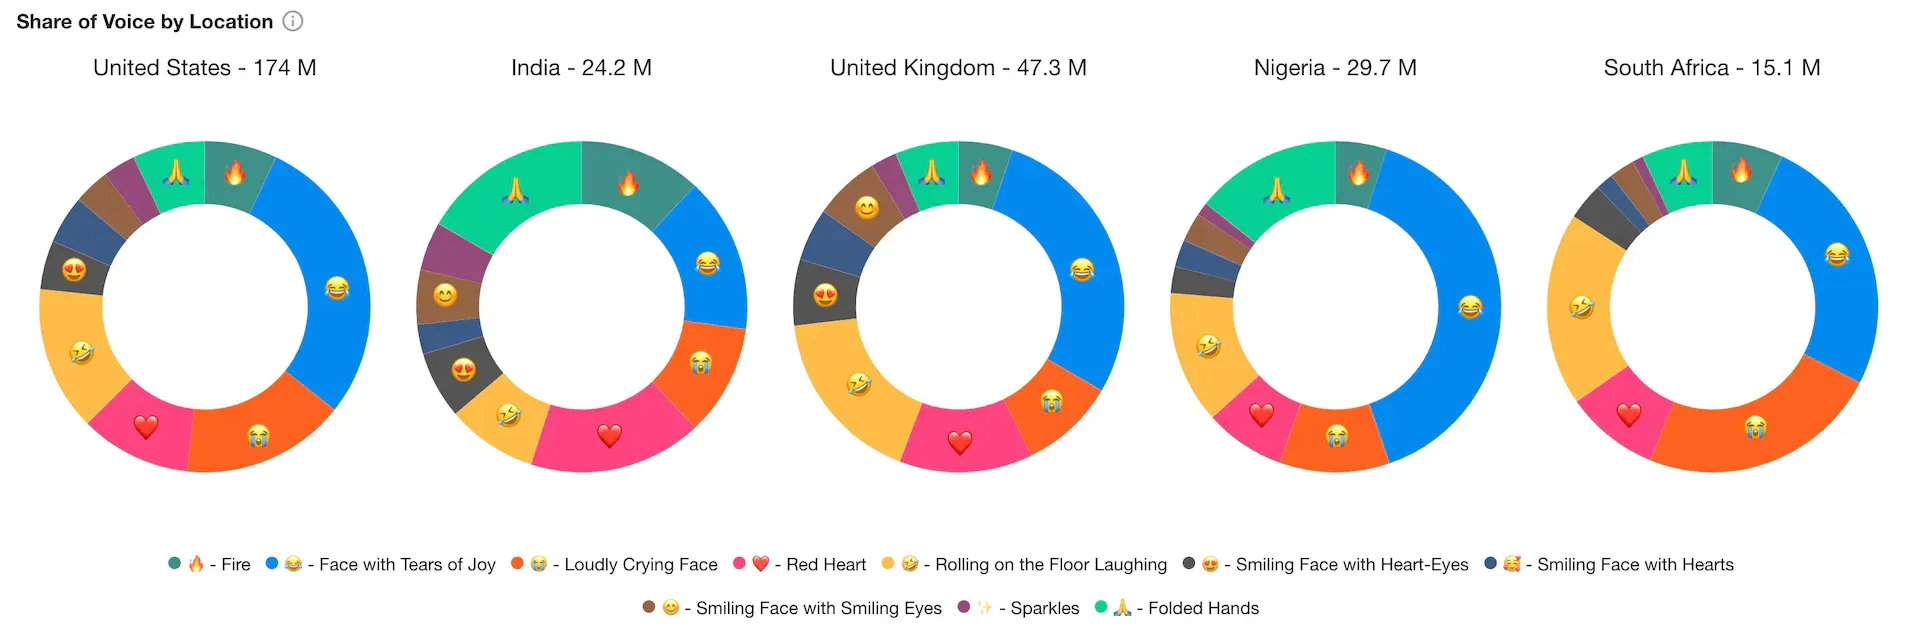 Apesar de algumas pequenas diferenças, os 5 países analisados têm um uso similar de emojis